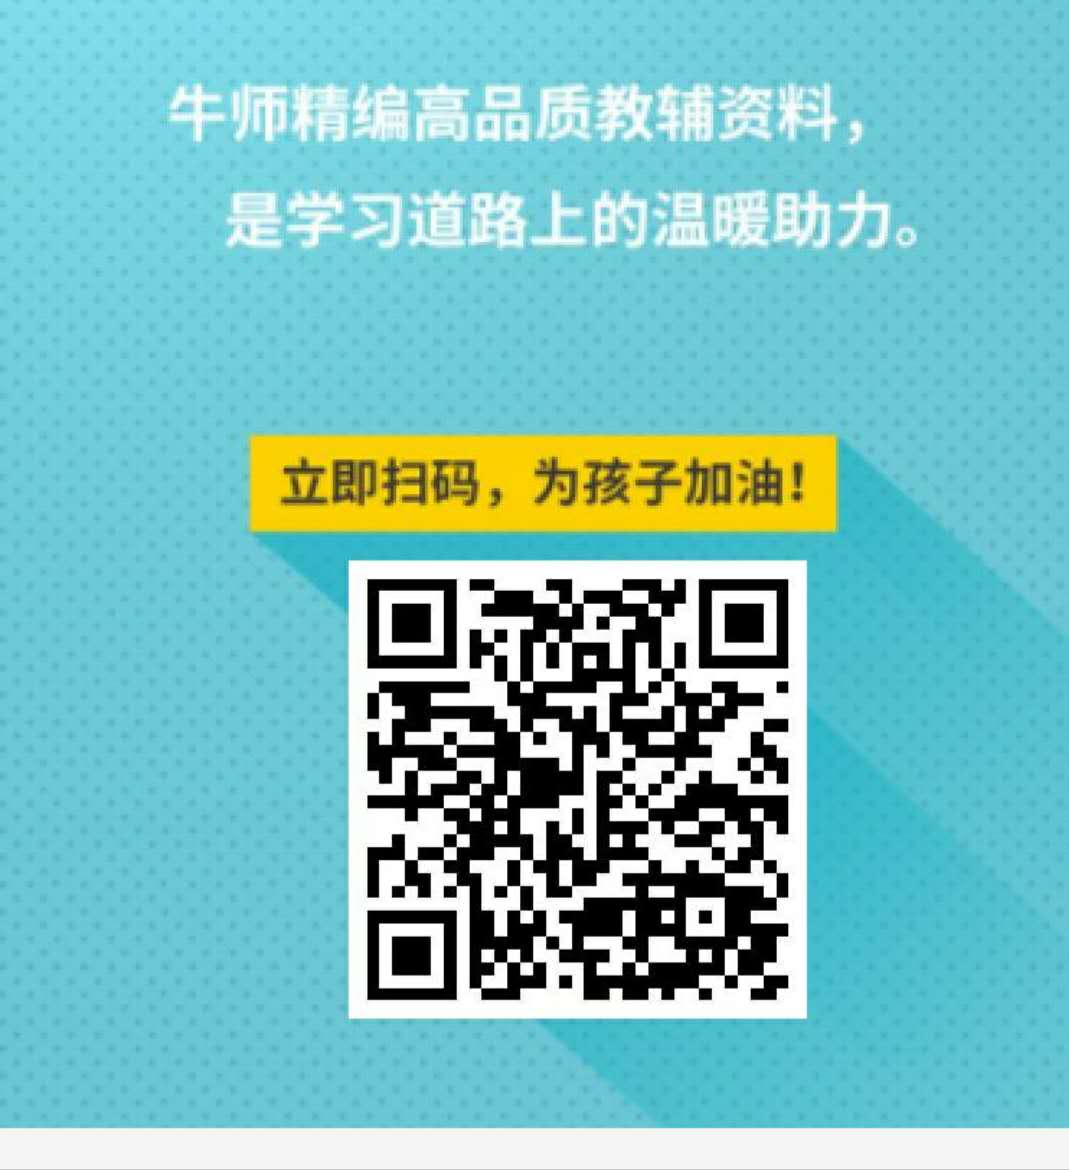 2019年重庆市中考数学试题及参考答案公布!大家查看!